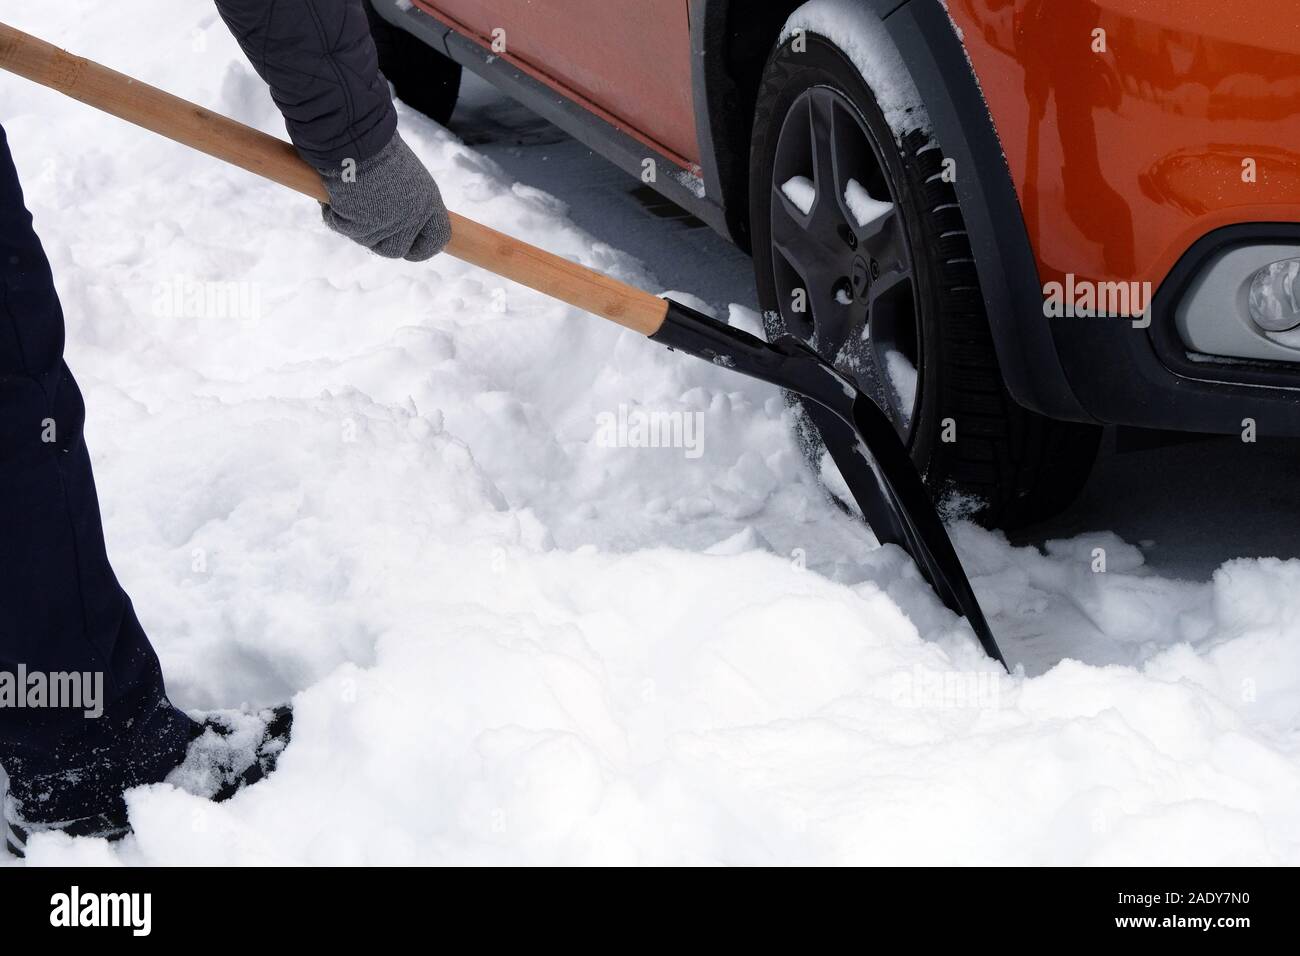 Homme avec une pelle à neige brossage est autour de voiture après une tempête de neige. Pelle à main. Problèmes d'hiver des automobilistes. Banque D'Images